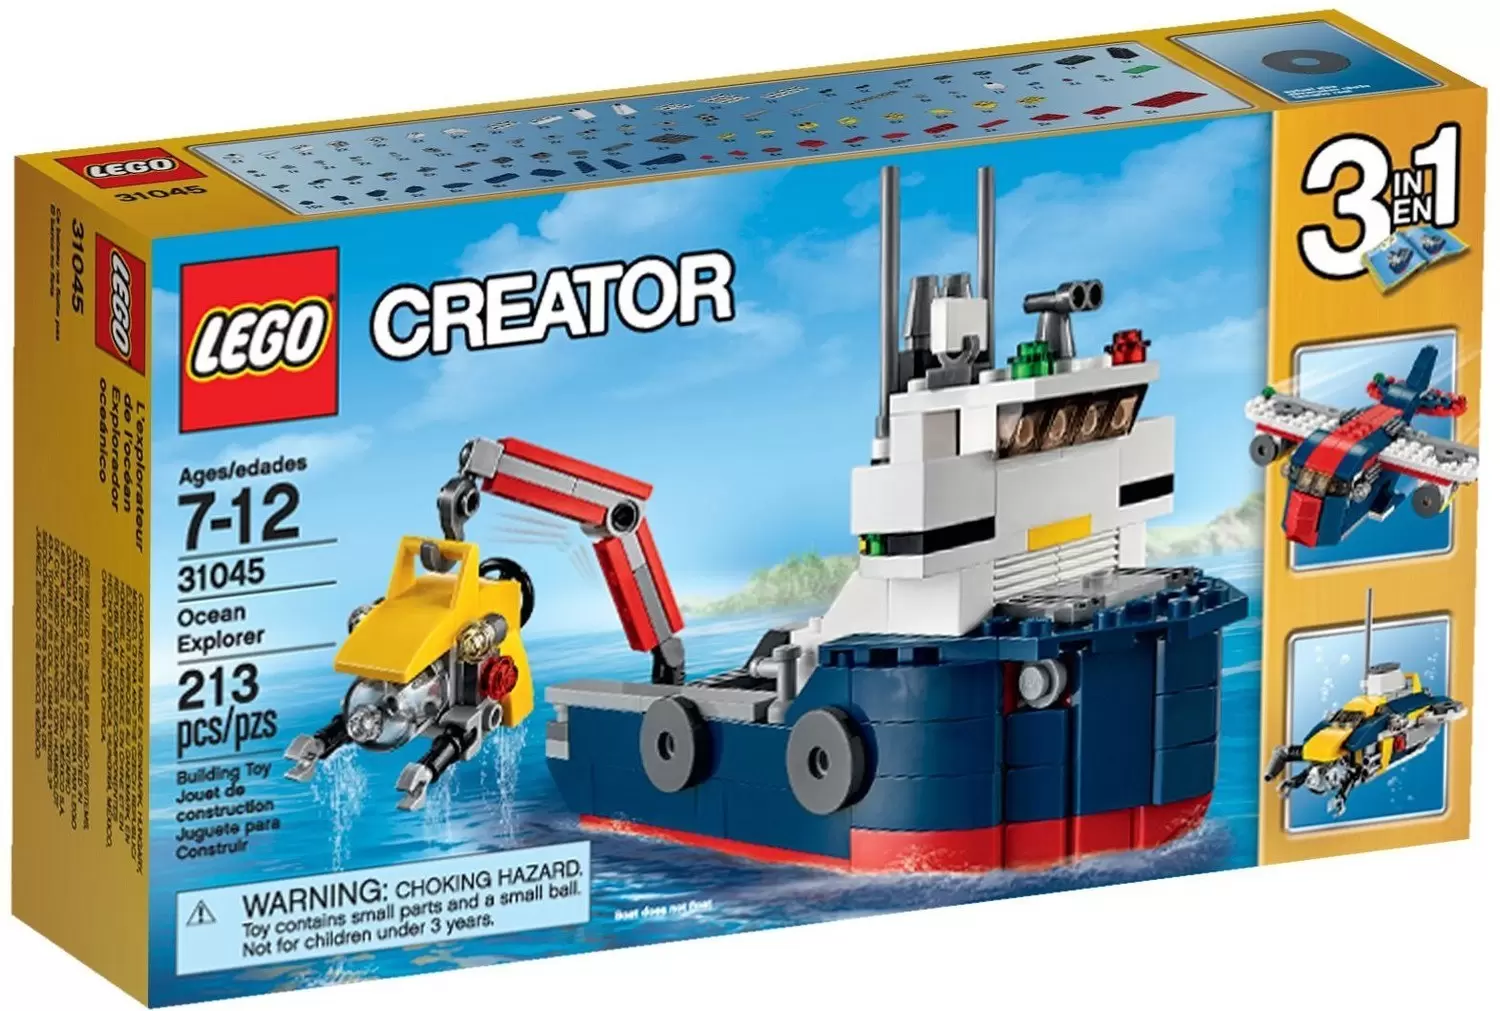 LEGO Creator - Ocean Explorer